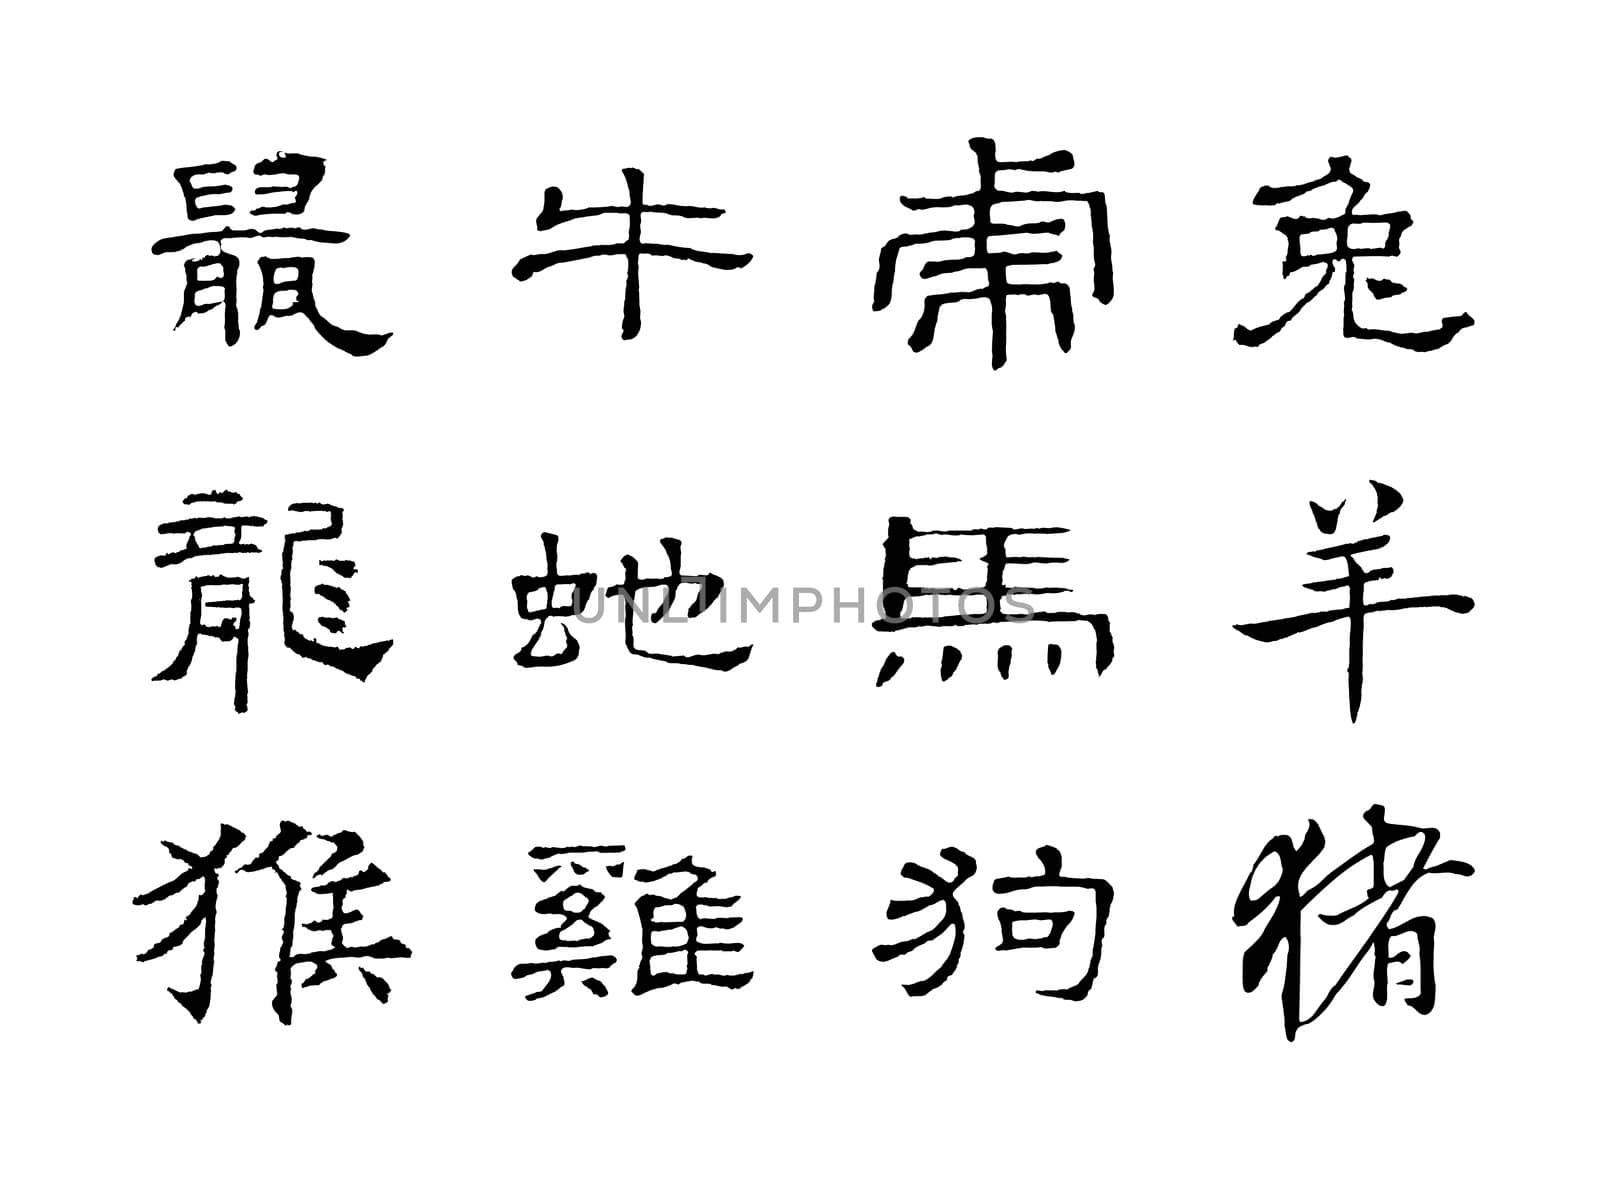 Chinese characters, Zodiac